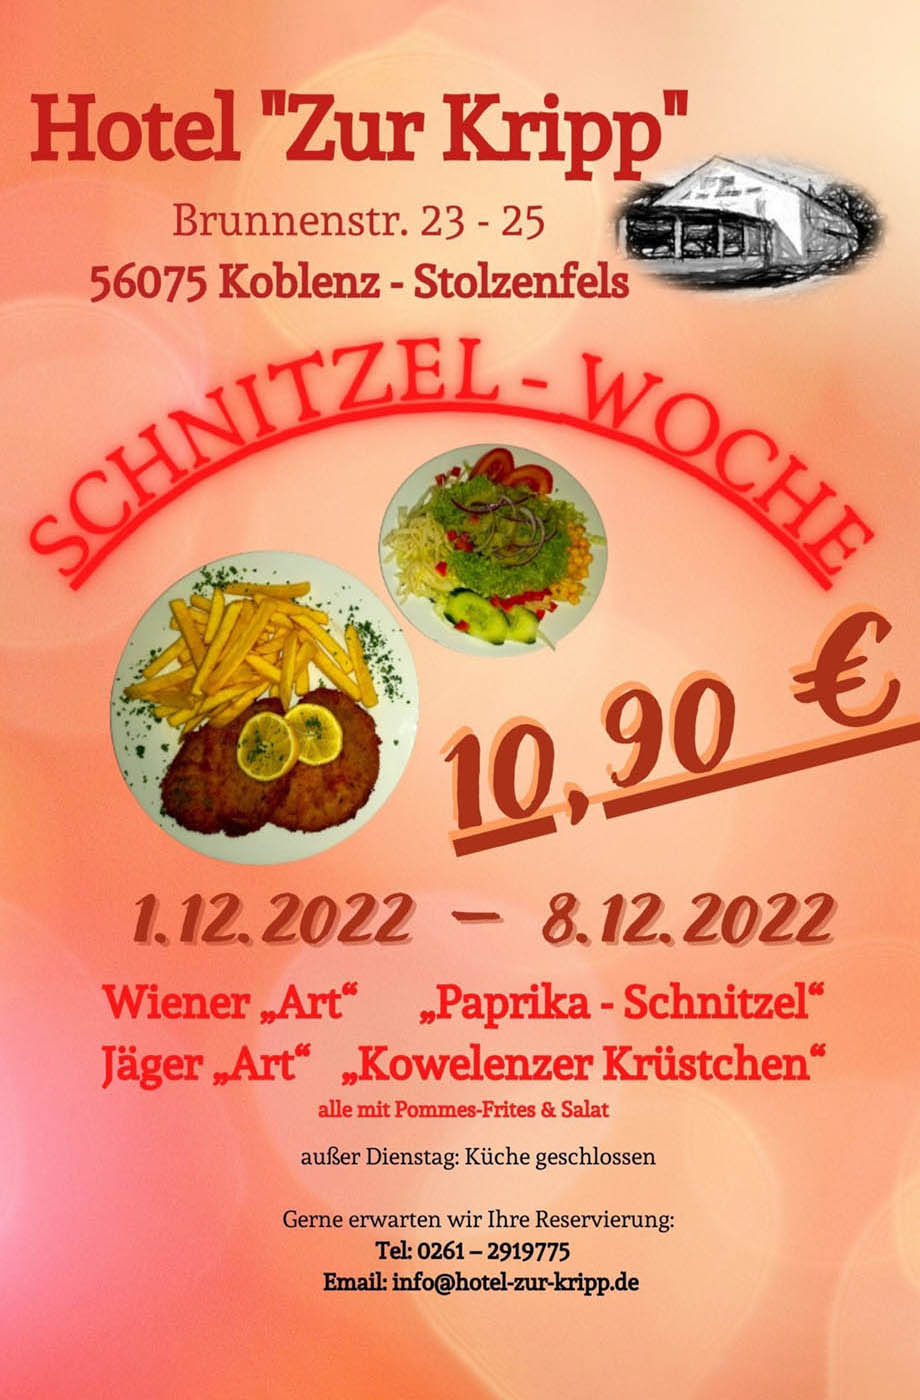 Hotel Zur Kripp - Schnitzel-Woche vom 1.12.2022 – 8.12.2022